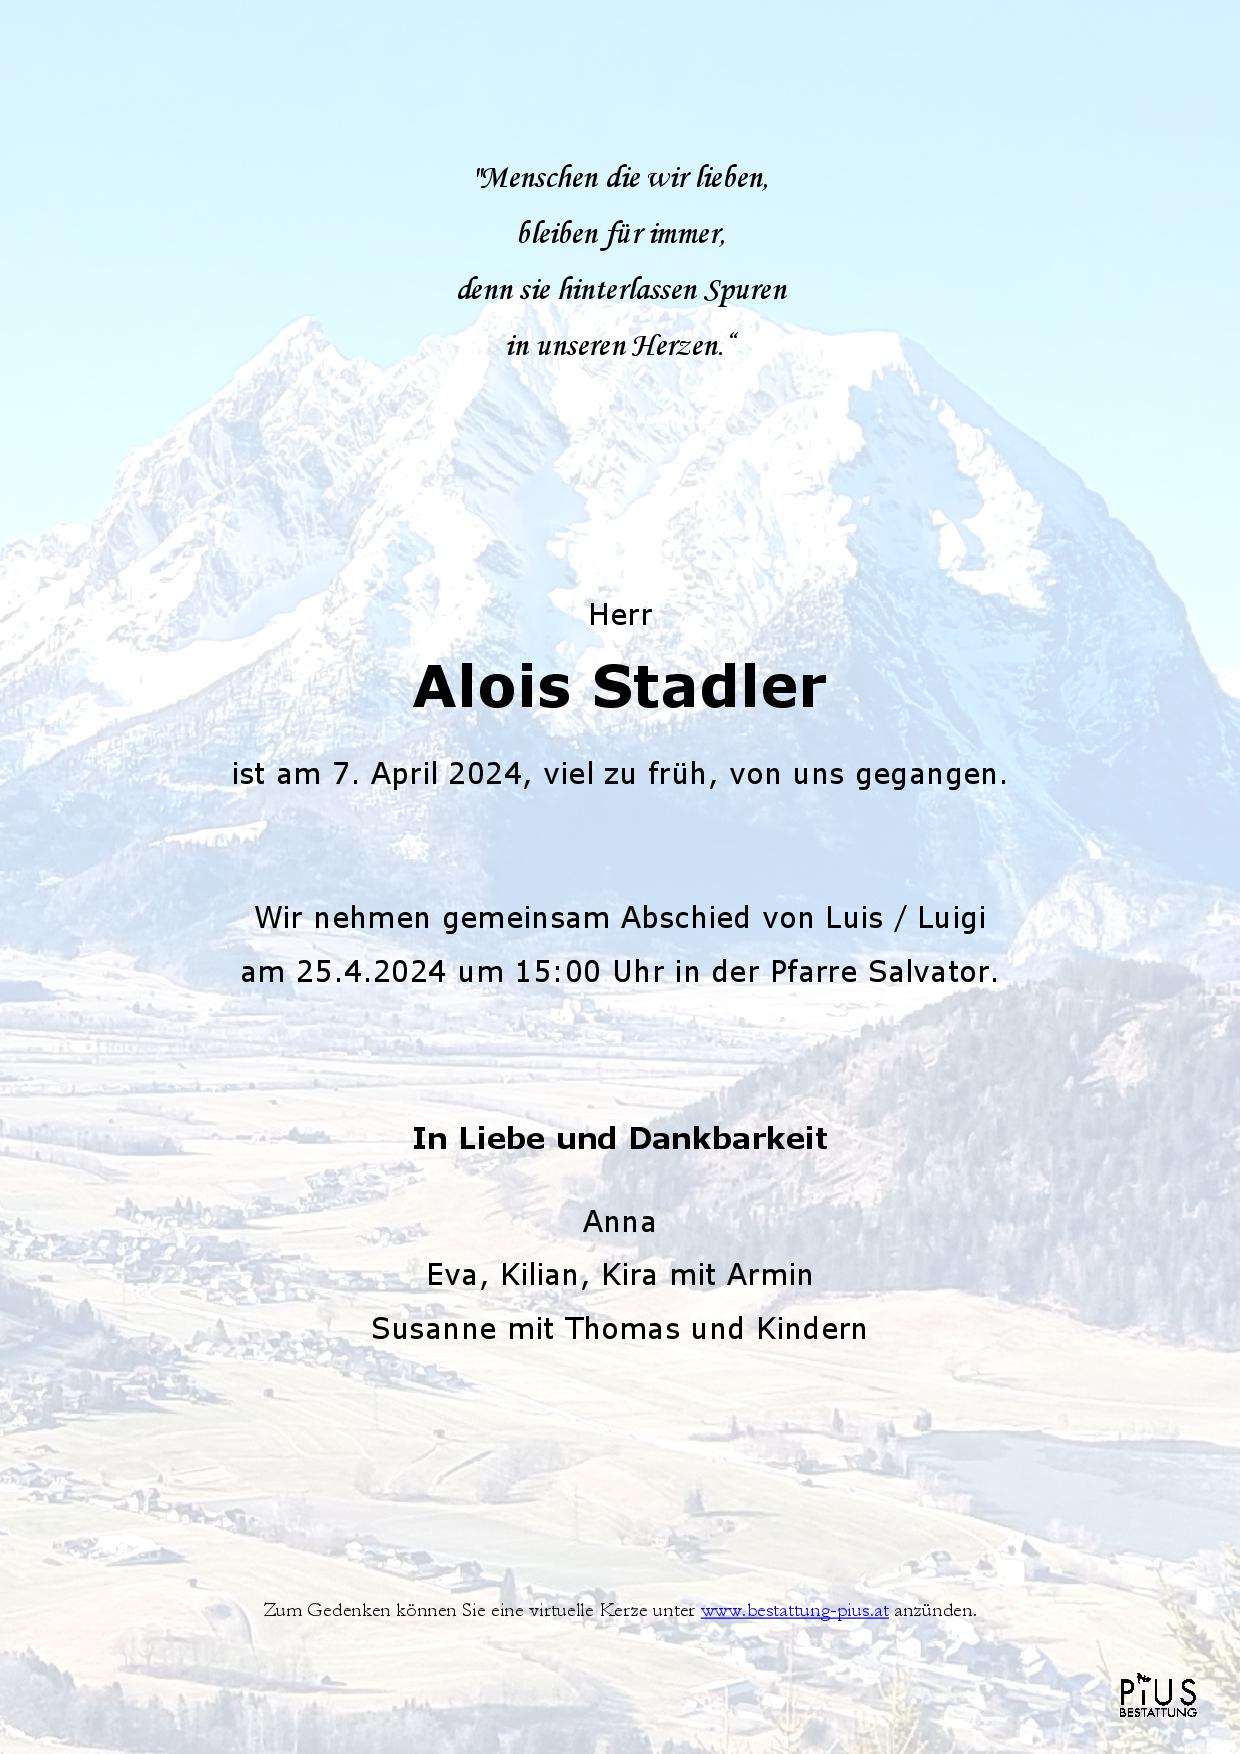 Alois Stadler